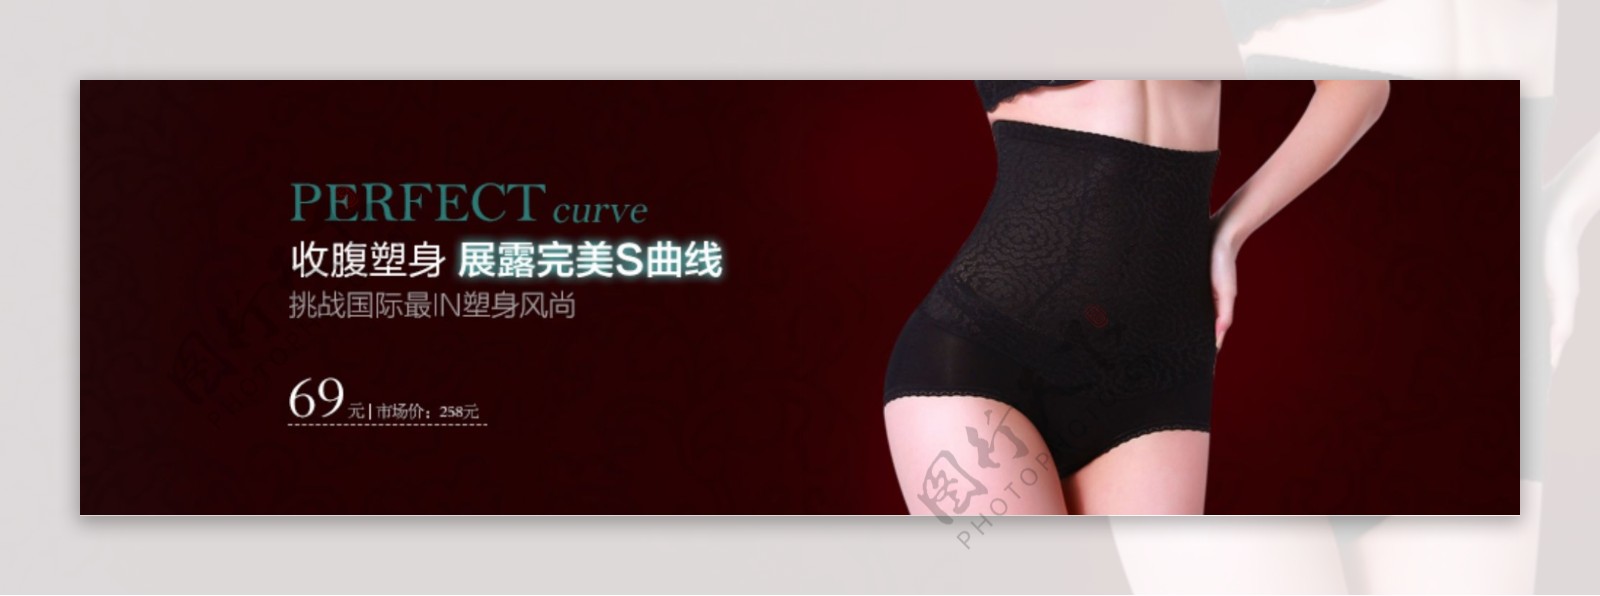 女装蕾丝收腹裤宣传海报